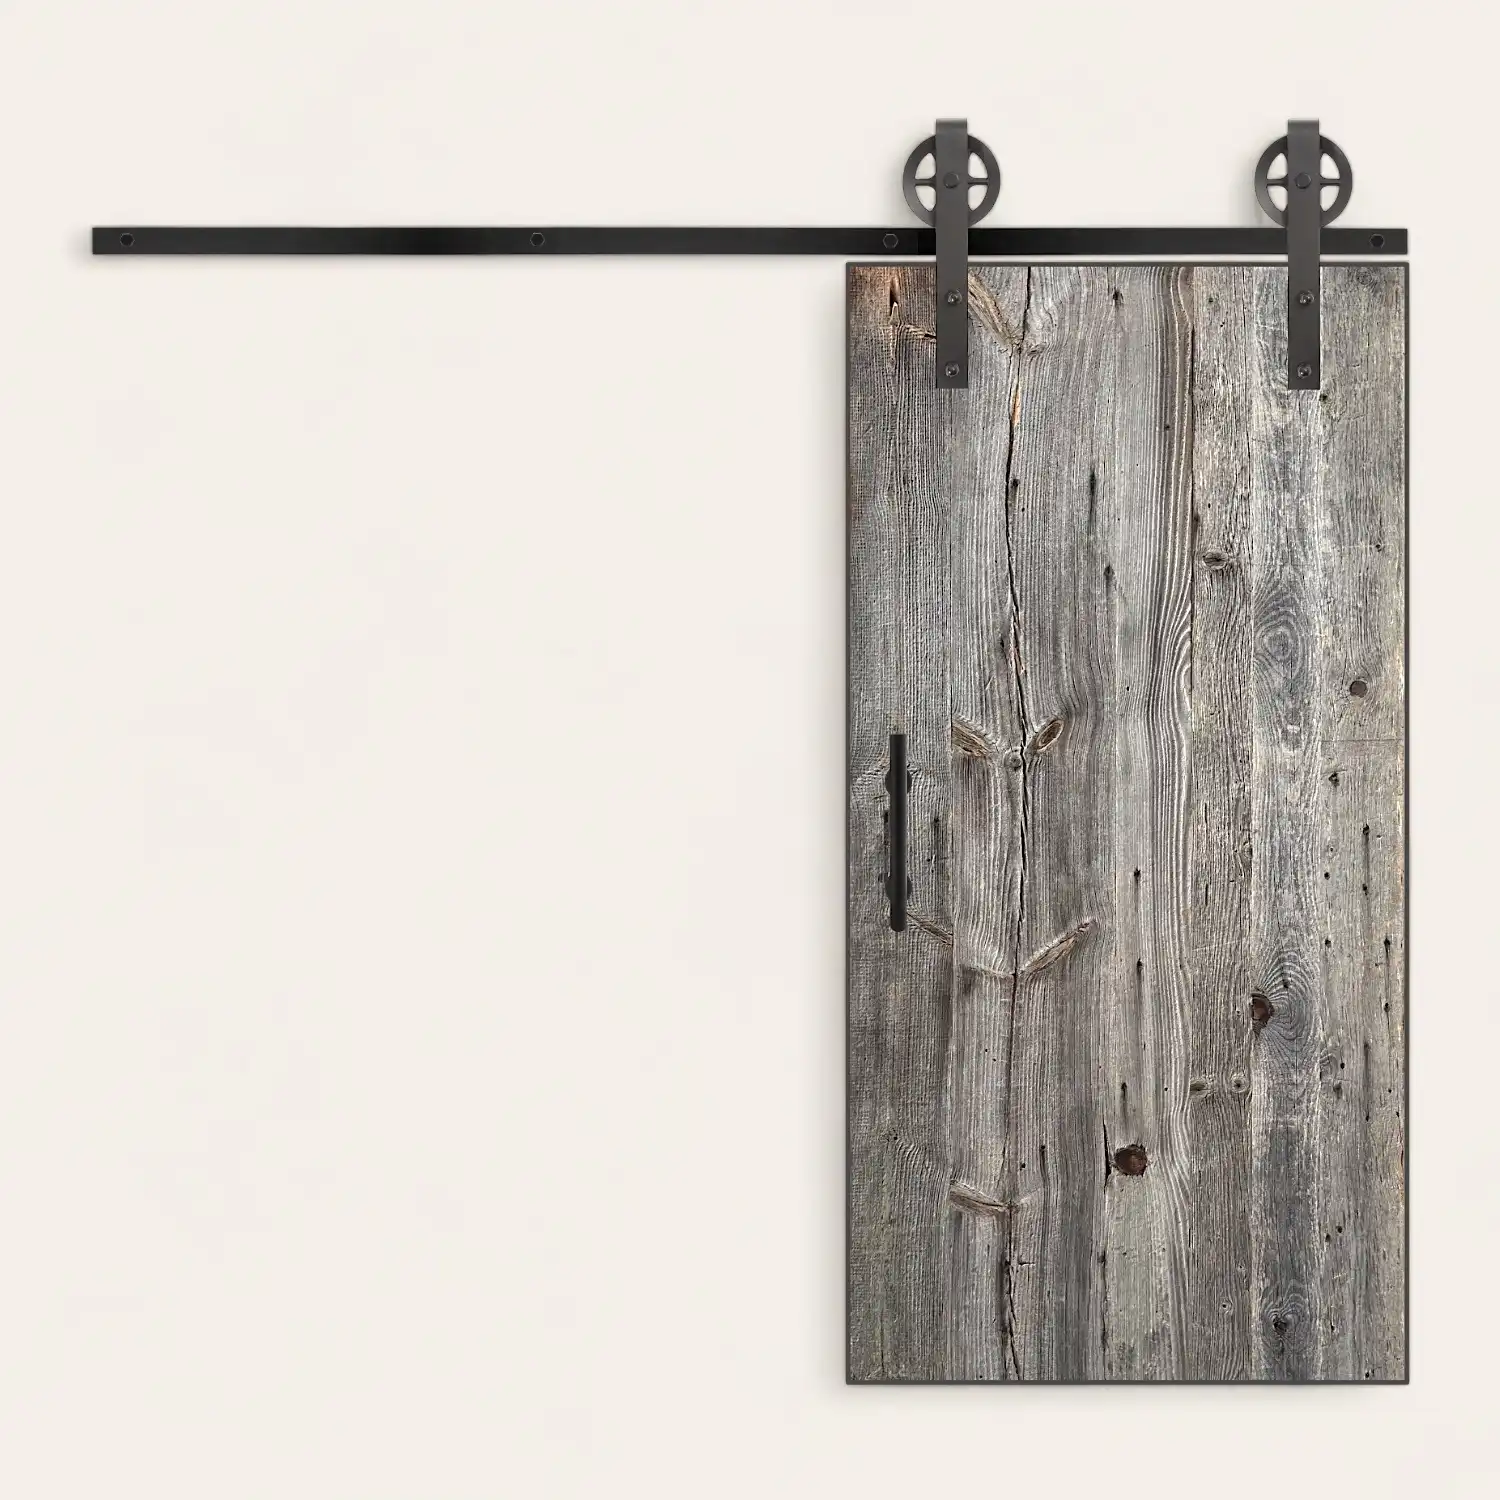  Une porte coulissante en vieux bois gris avec des poignées en métal noir. 